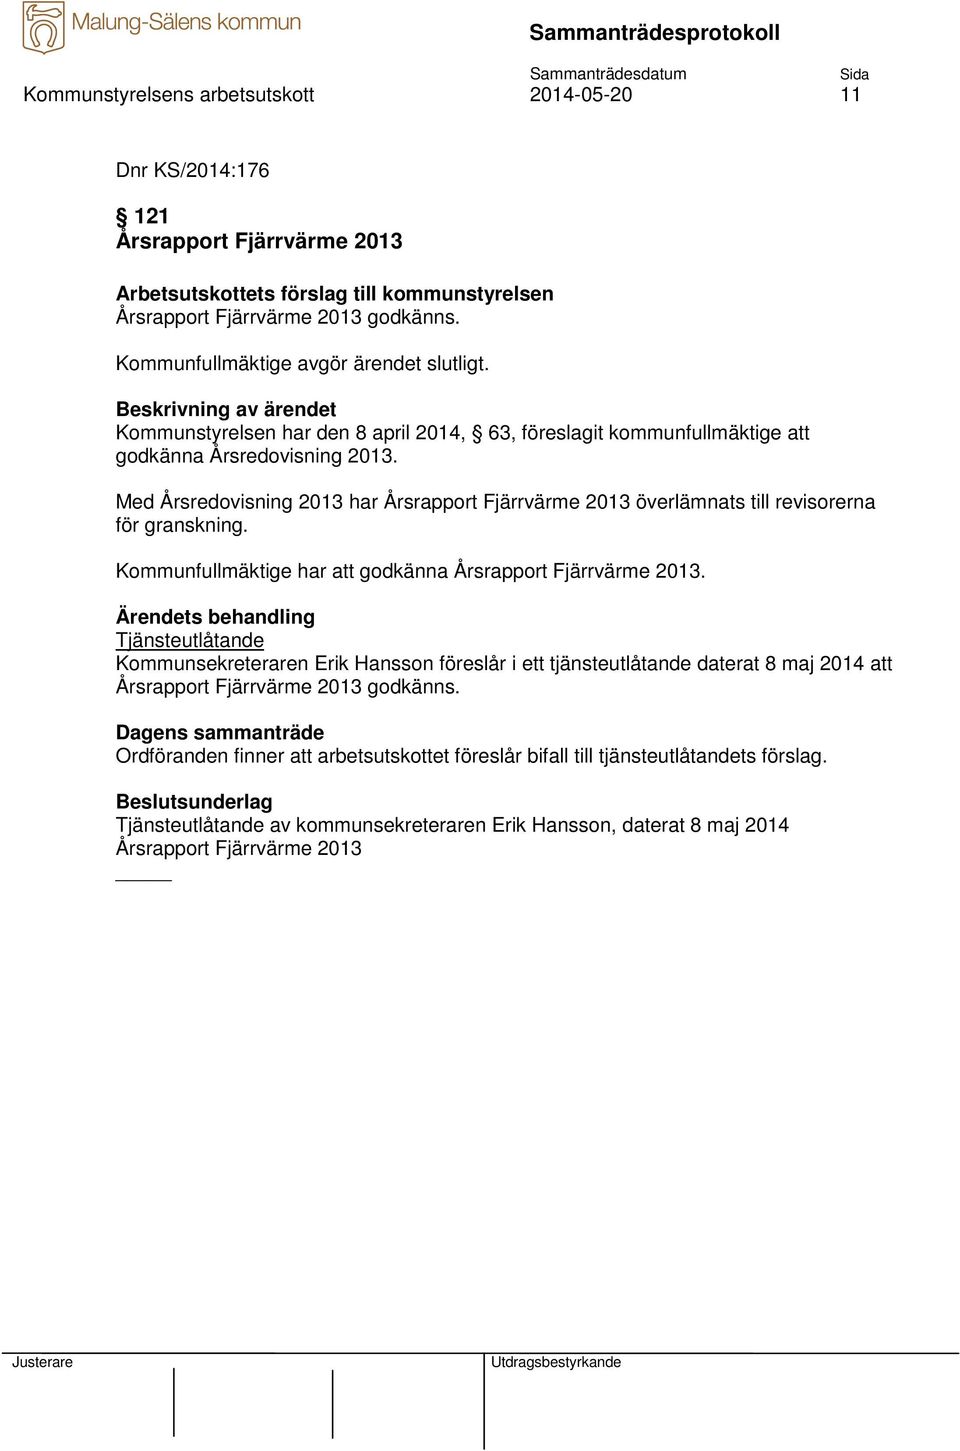 Med Årsredovisning 2013 har Årsrapport Fjärrvärme 2013 överlämnats till revisorerna för granskning. Kommunfullmäktige har att godkänna Årsrapport Fjärrvärme 2013.